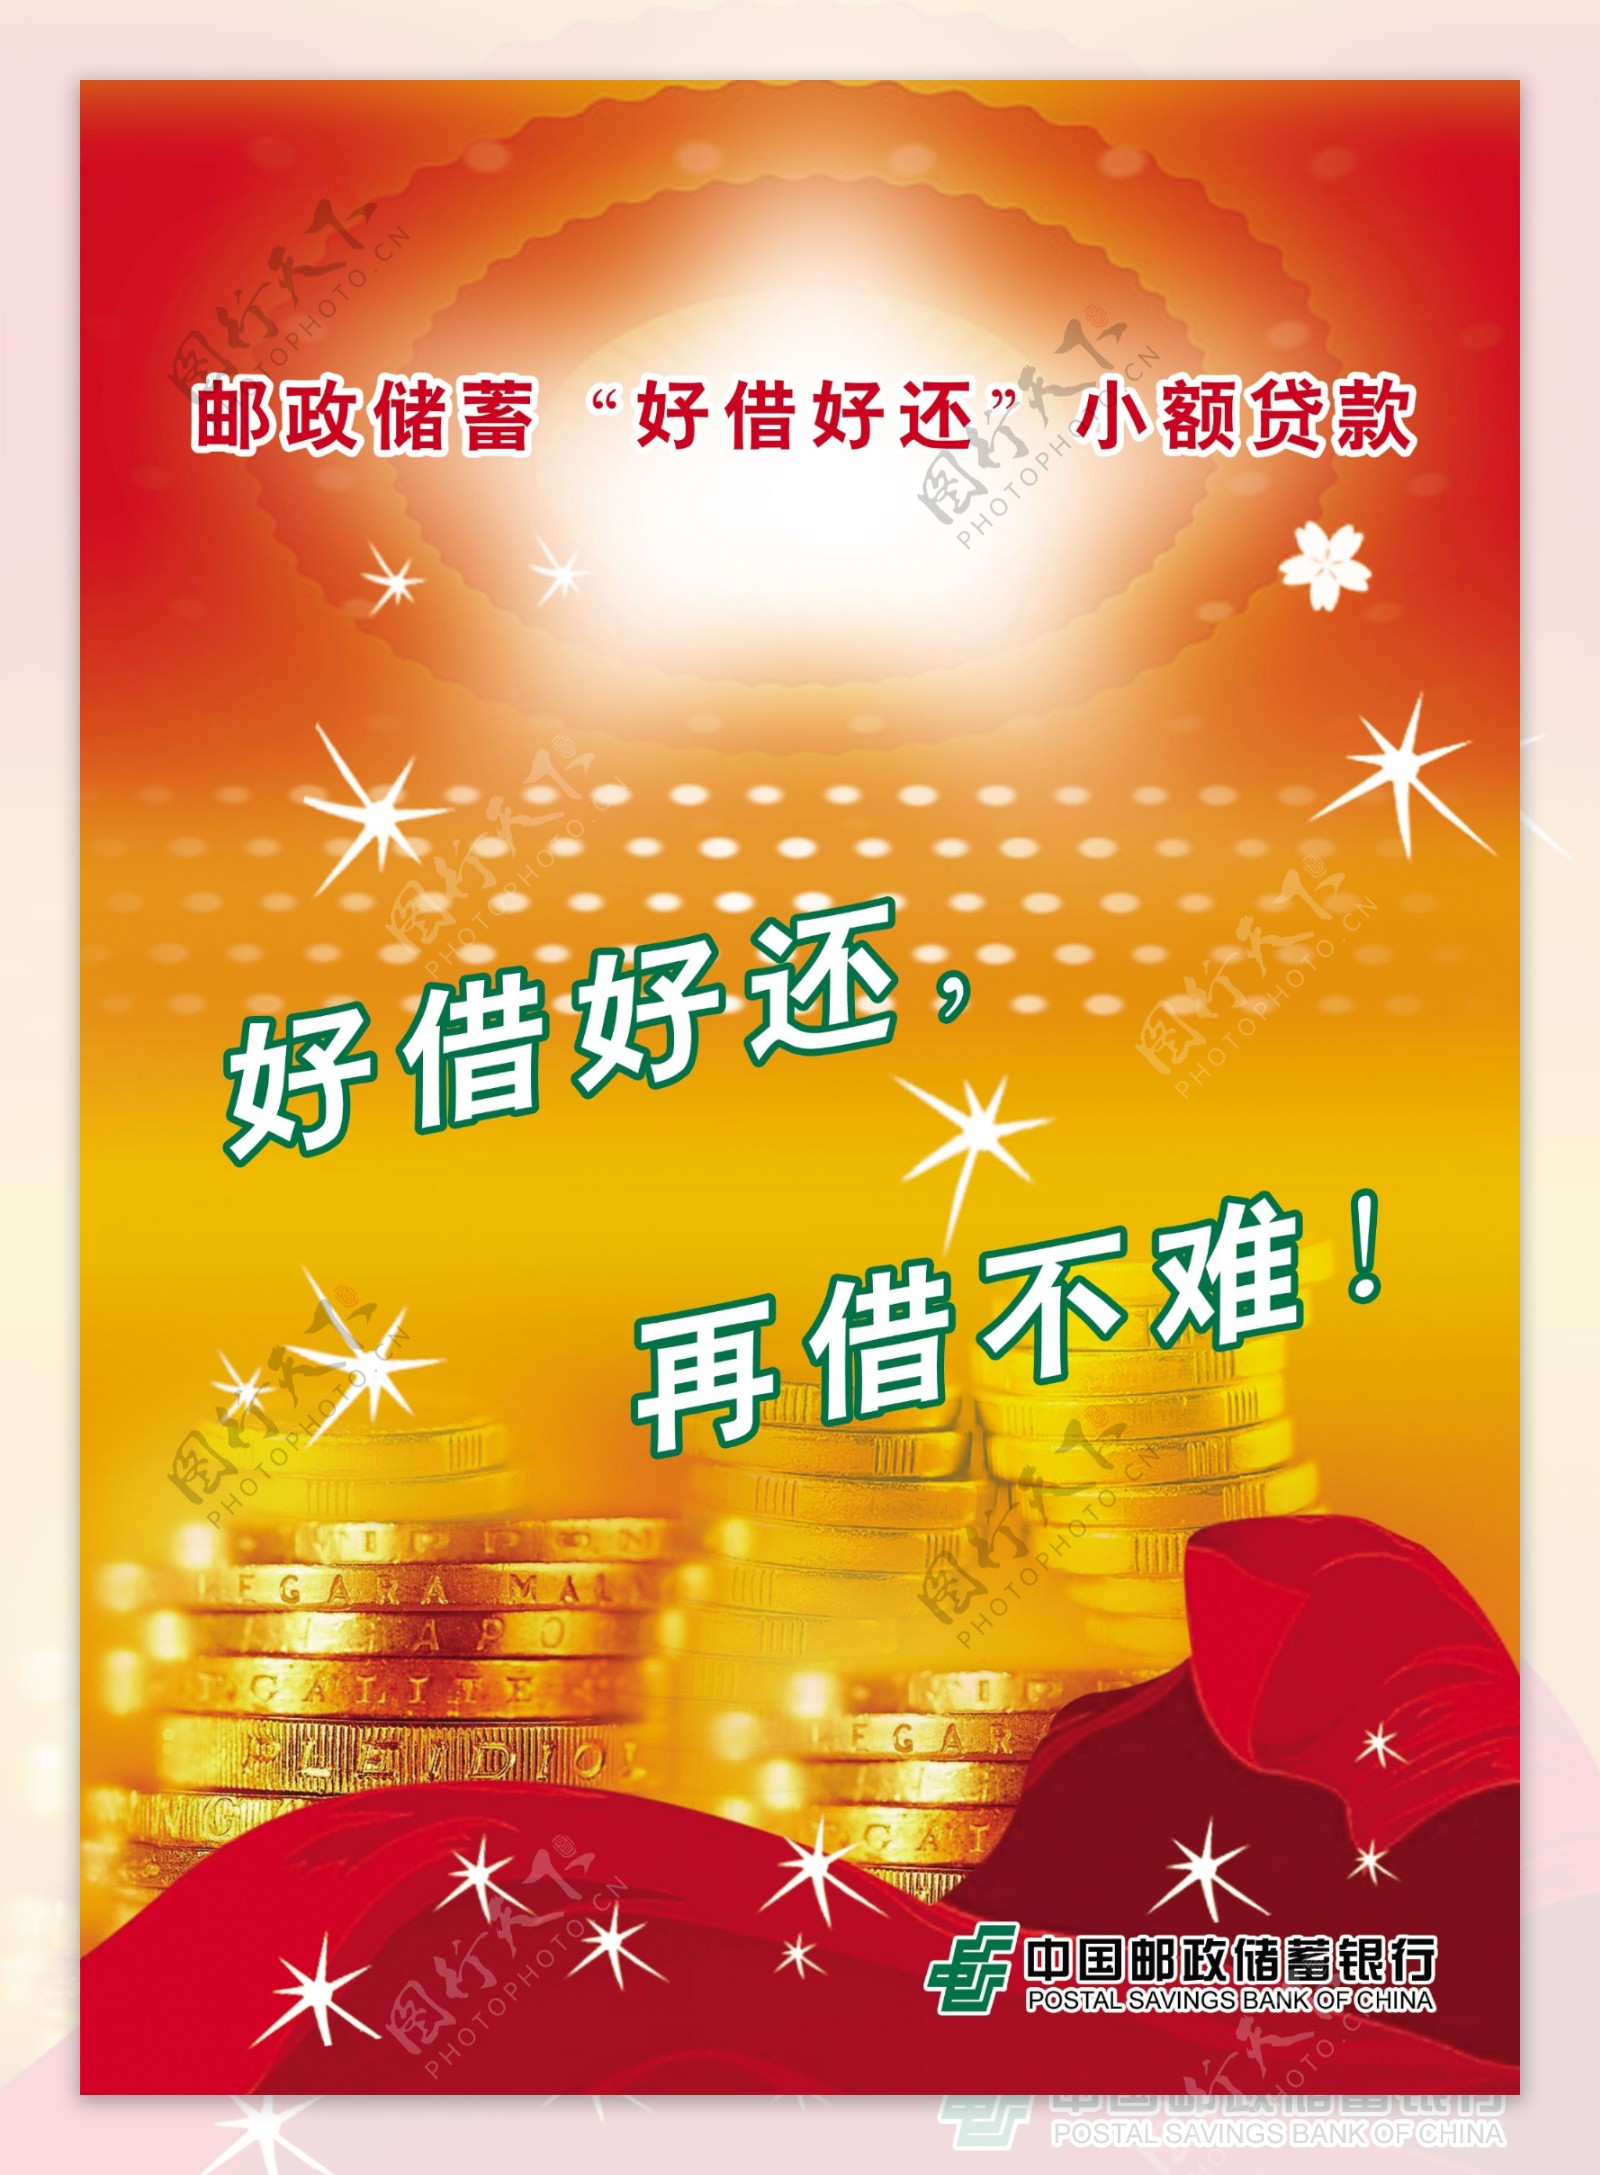 诚信中国邮政储蓄银行图片